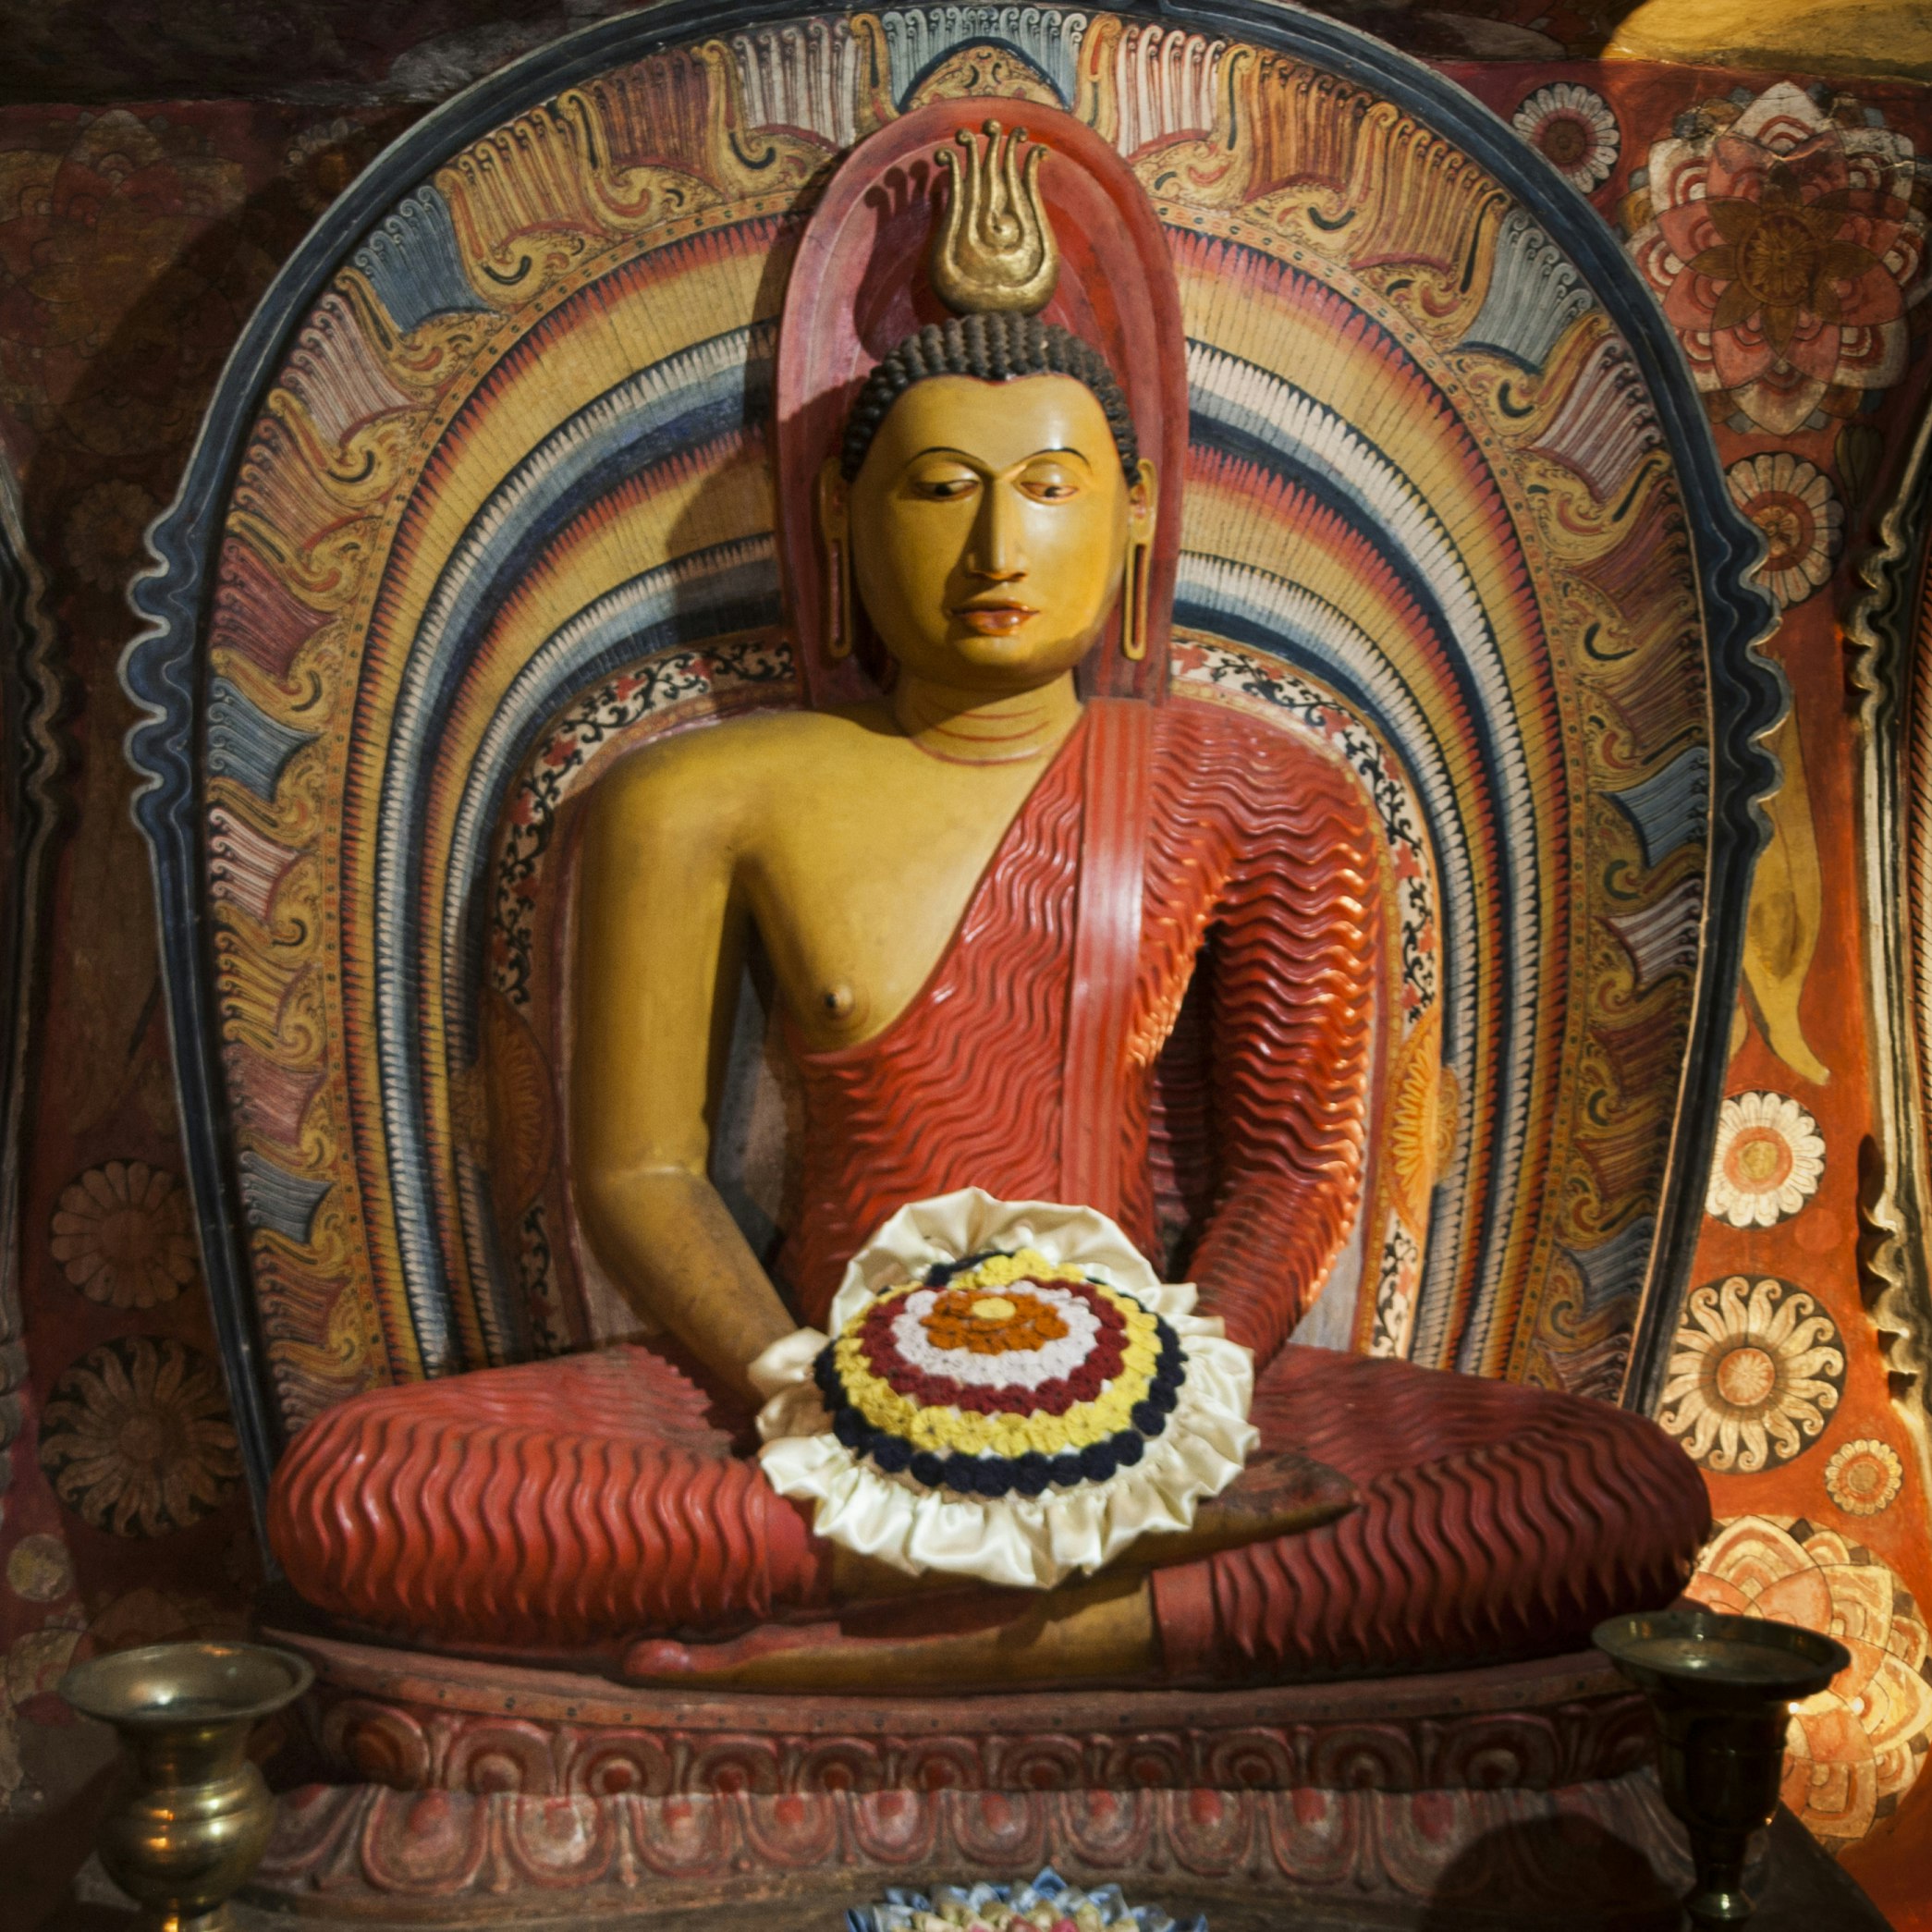 A Buddha statue in Degaldoruwa temple